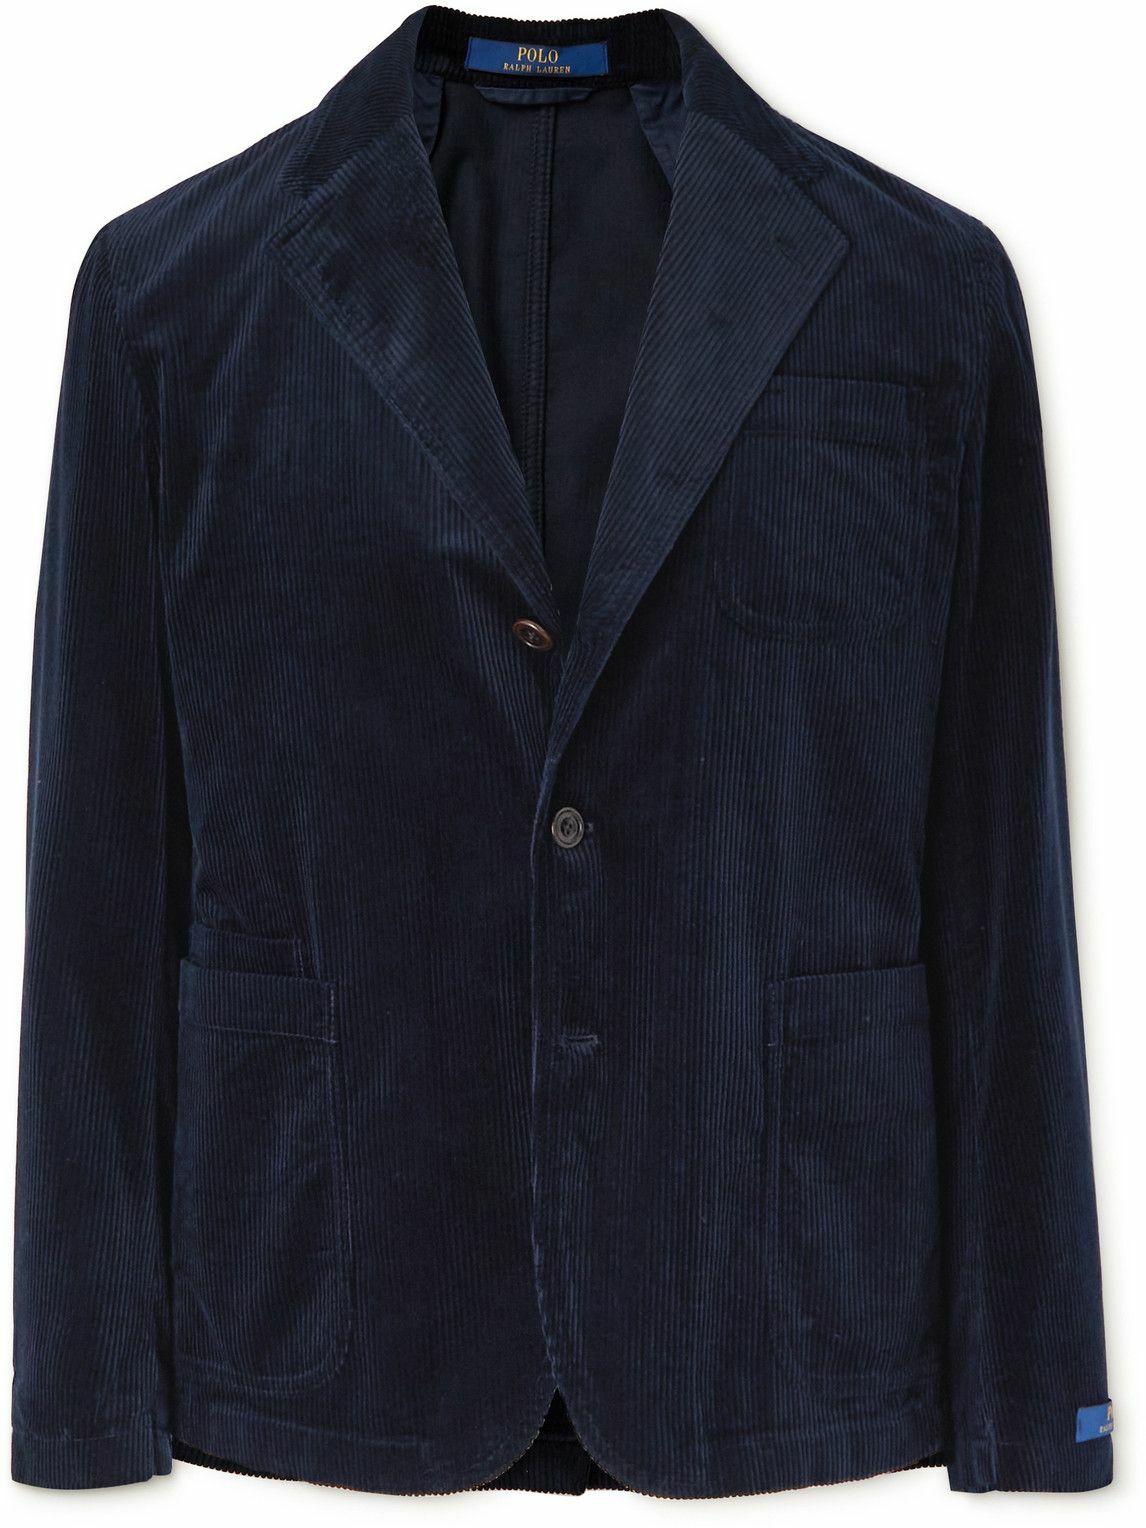 Polo Ralph Lauren - Cotton-Corduroy Suit Jacket - Blue Polo Ralph Lauren